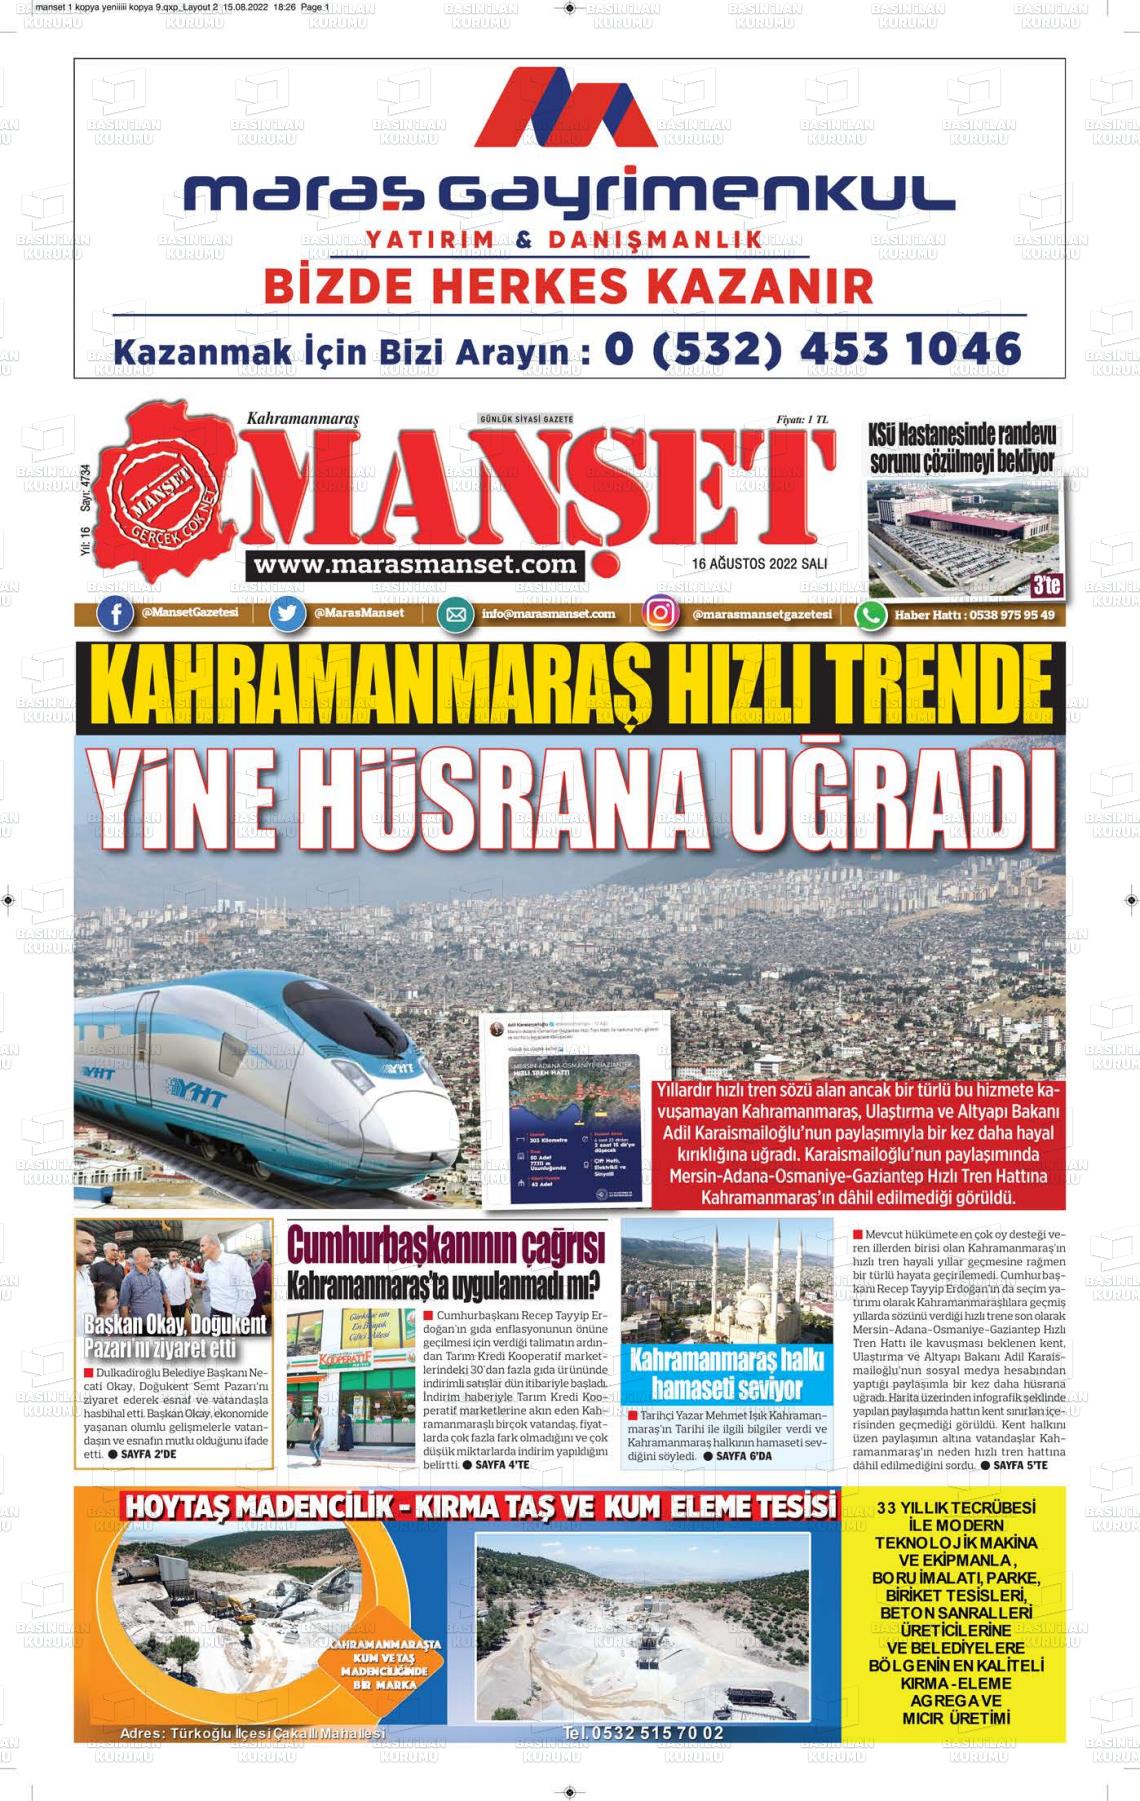 16 Ağustos 2022 Manşet Gazete Manşeti